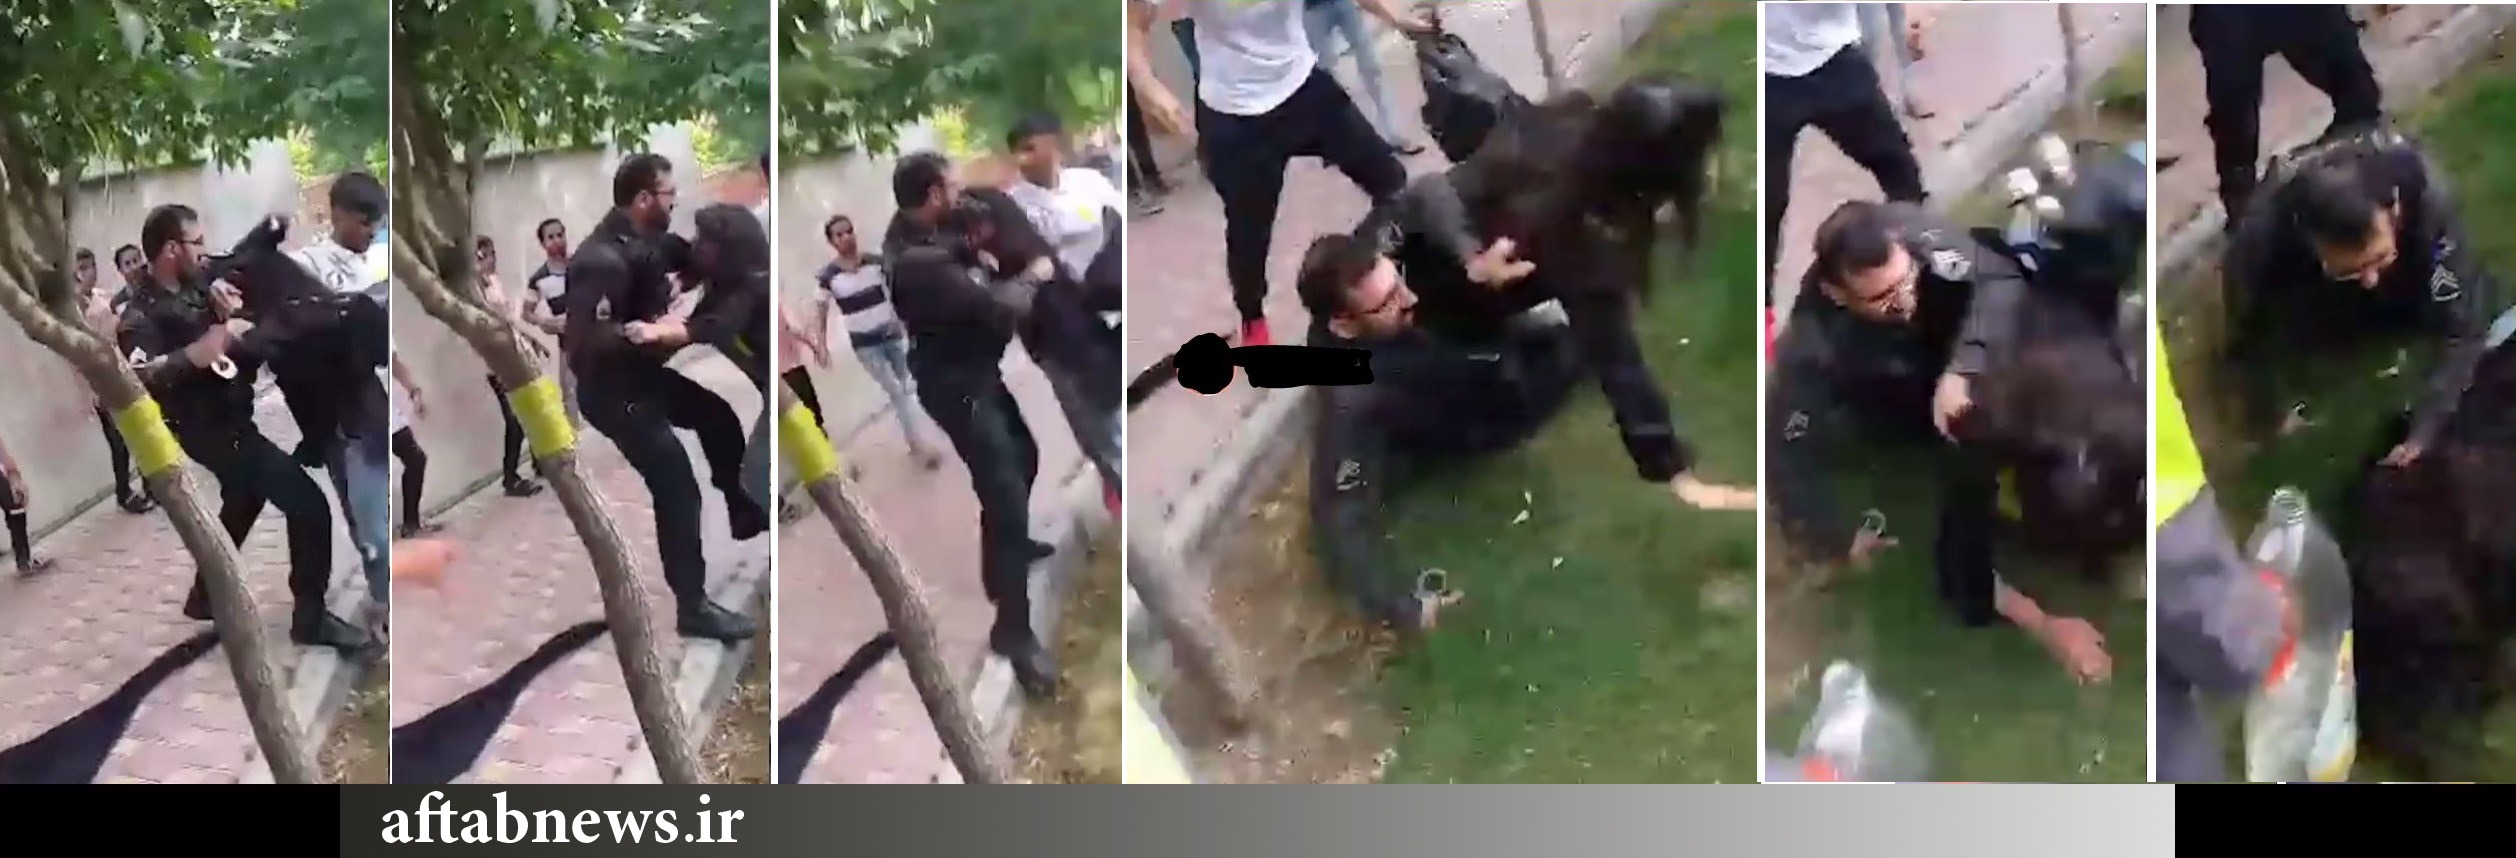 ماجرای فیلم درگیری مأمور پلیس با دختر جوان چیست؟+عکس